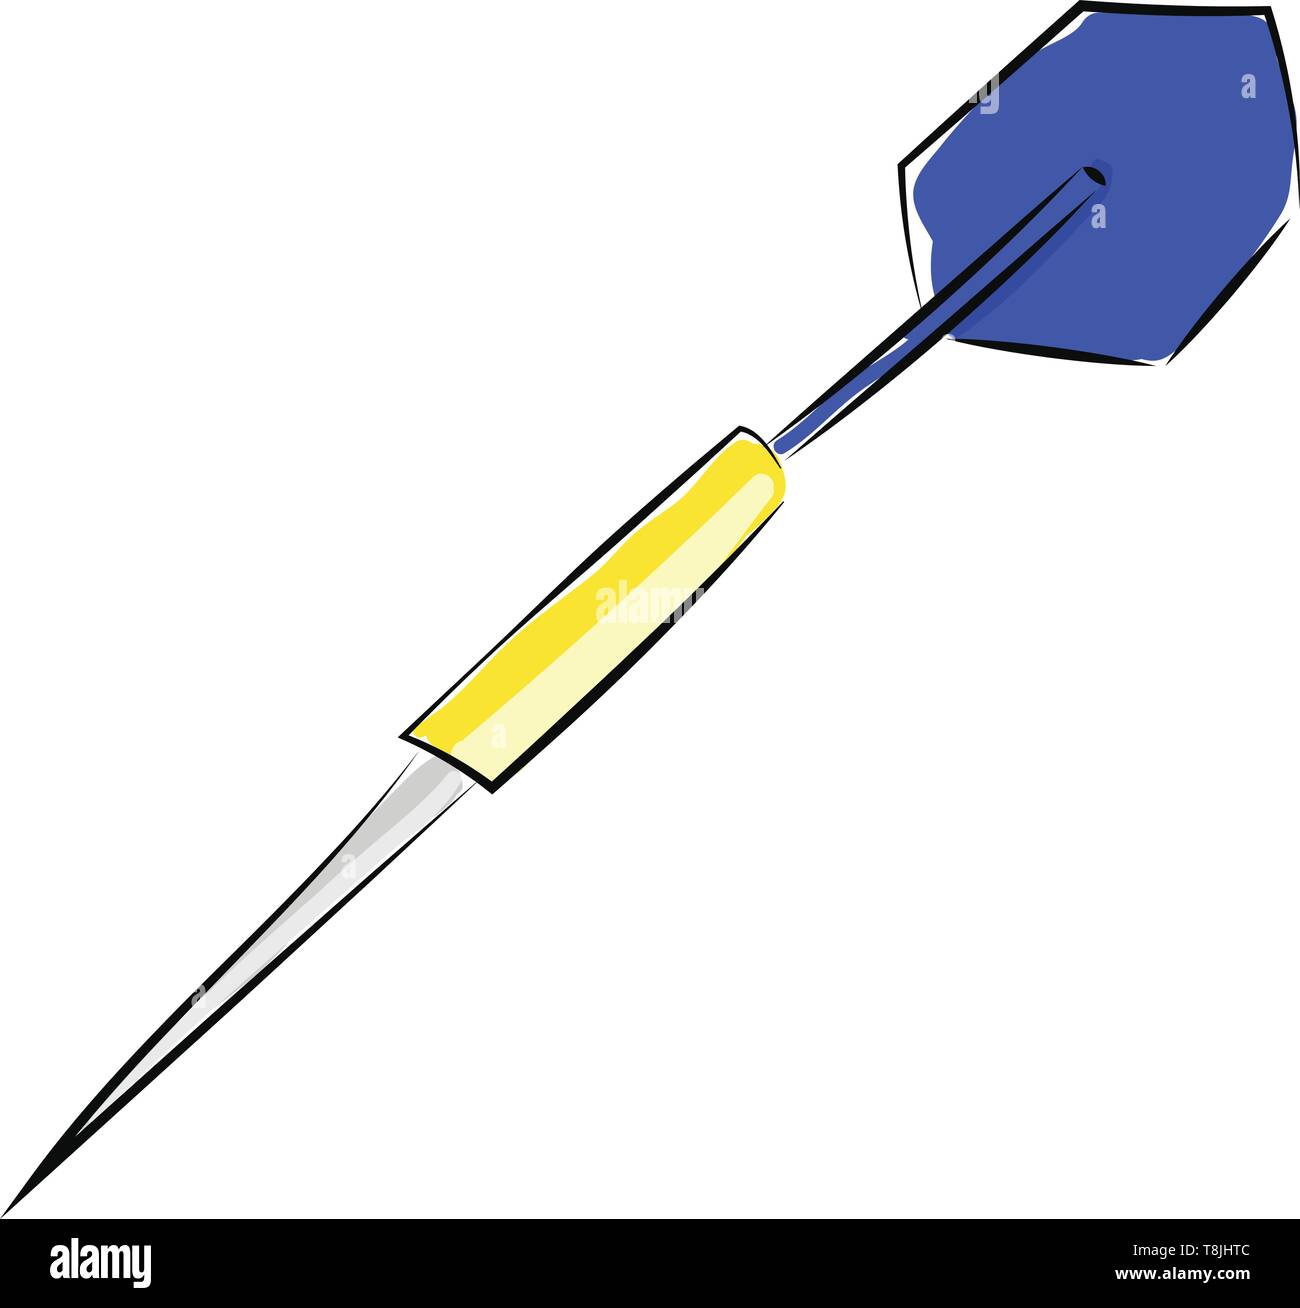 Una freccia con un punto di colore argento, giallo canna e un volo blu., il vettore, il colore di disegno o illustrazione. Illustrazione Vettoriale